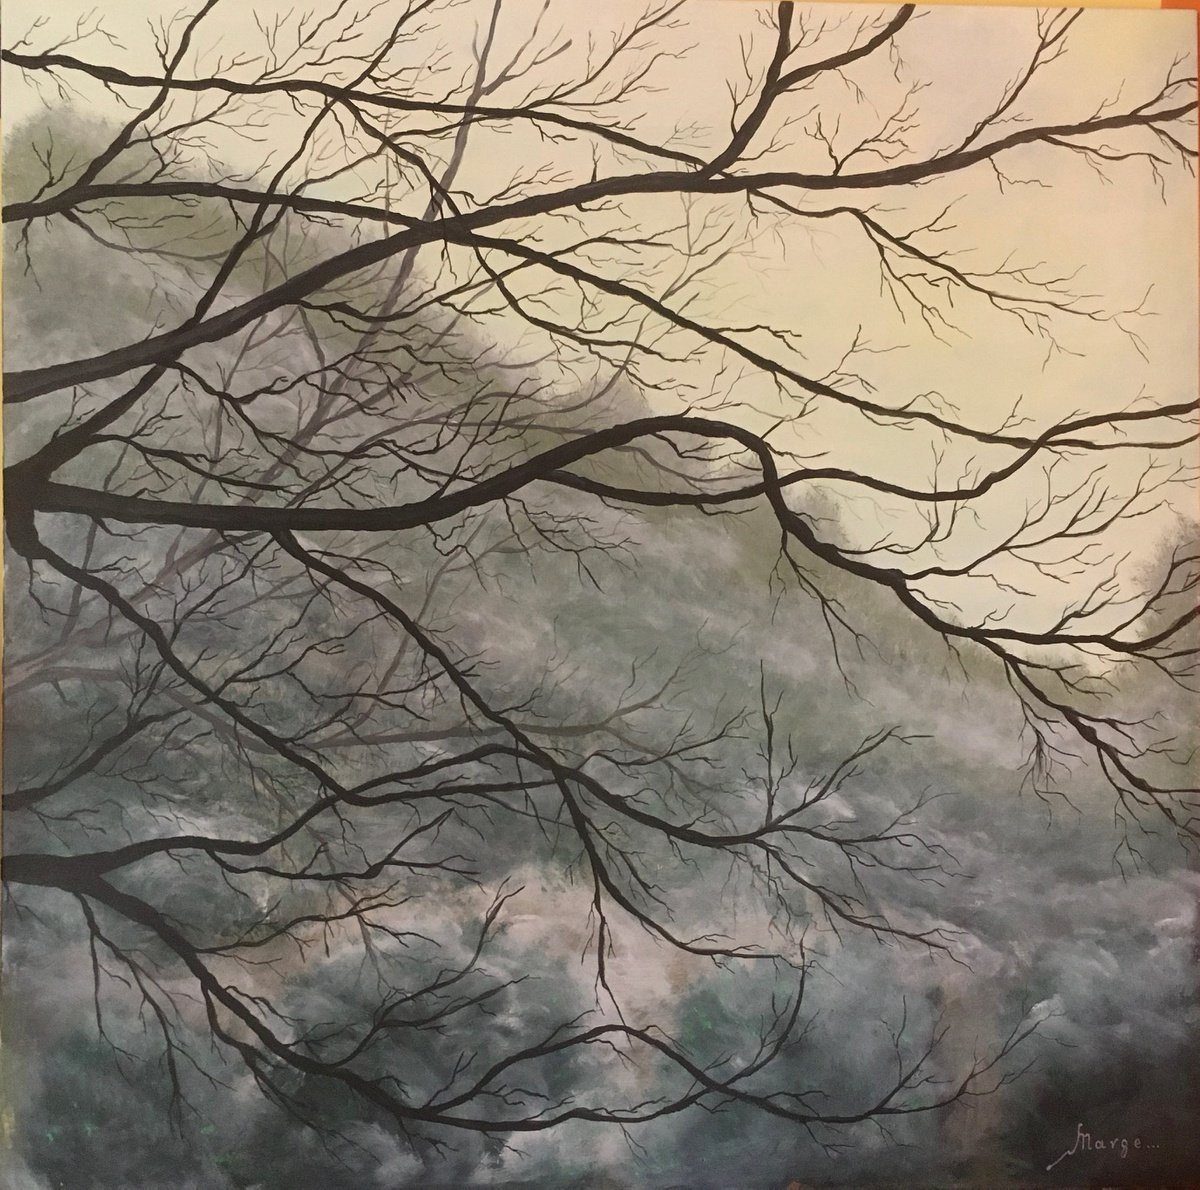 Μorning fog in the forest by Margarita Telianidis